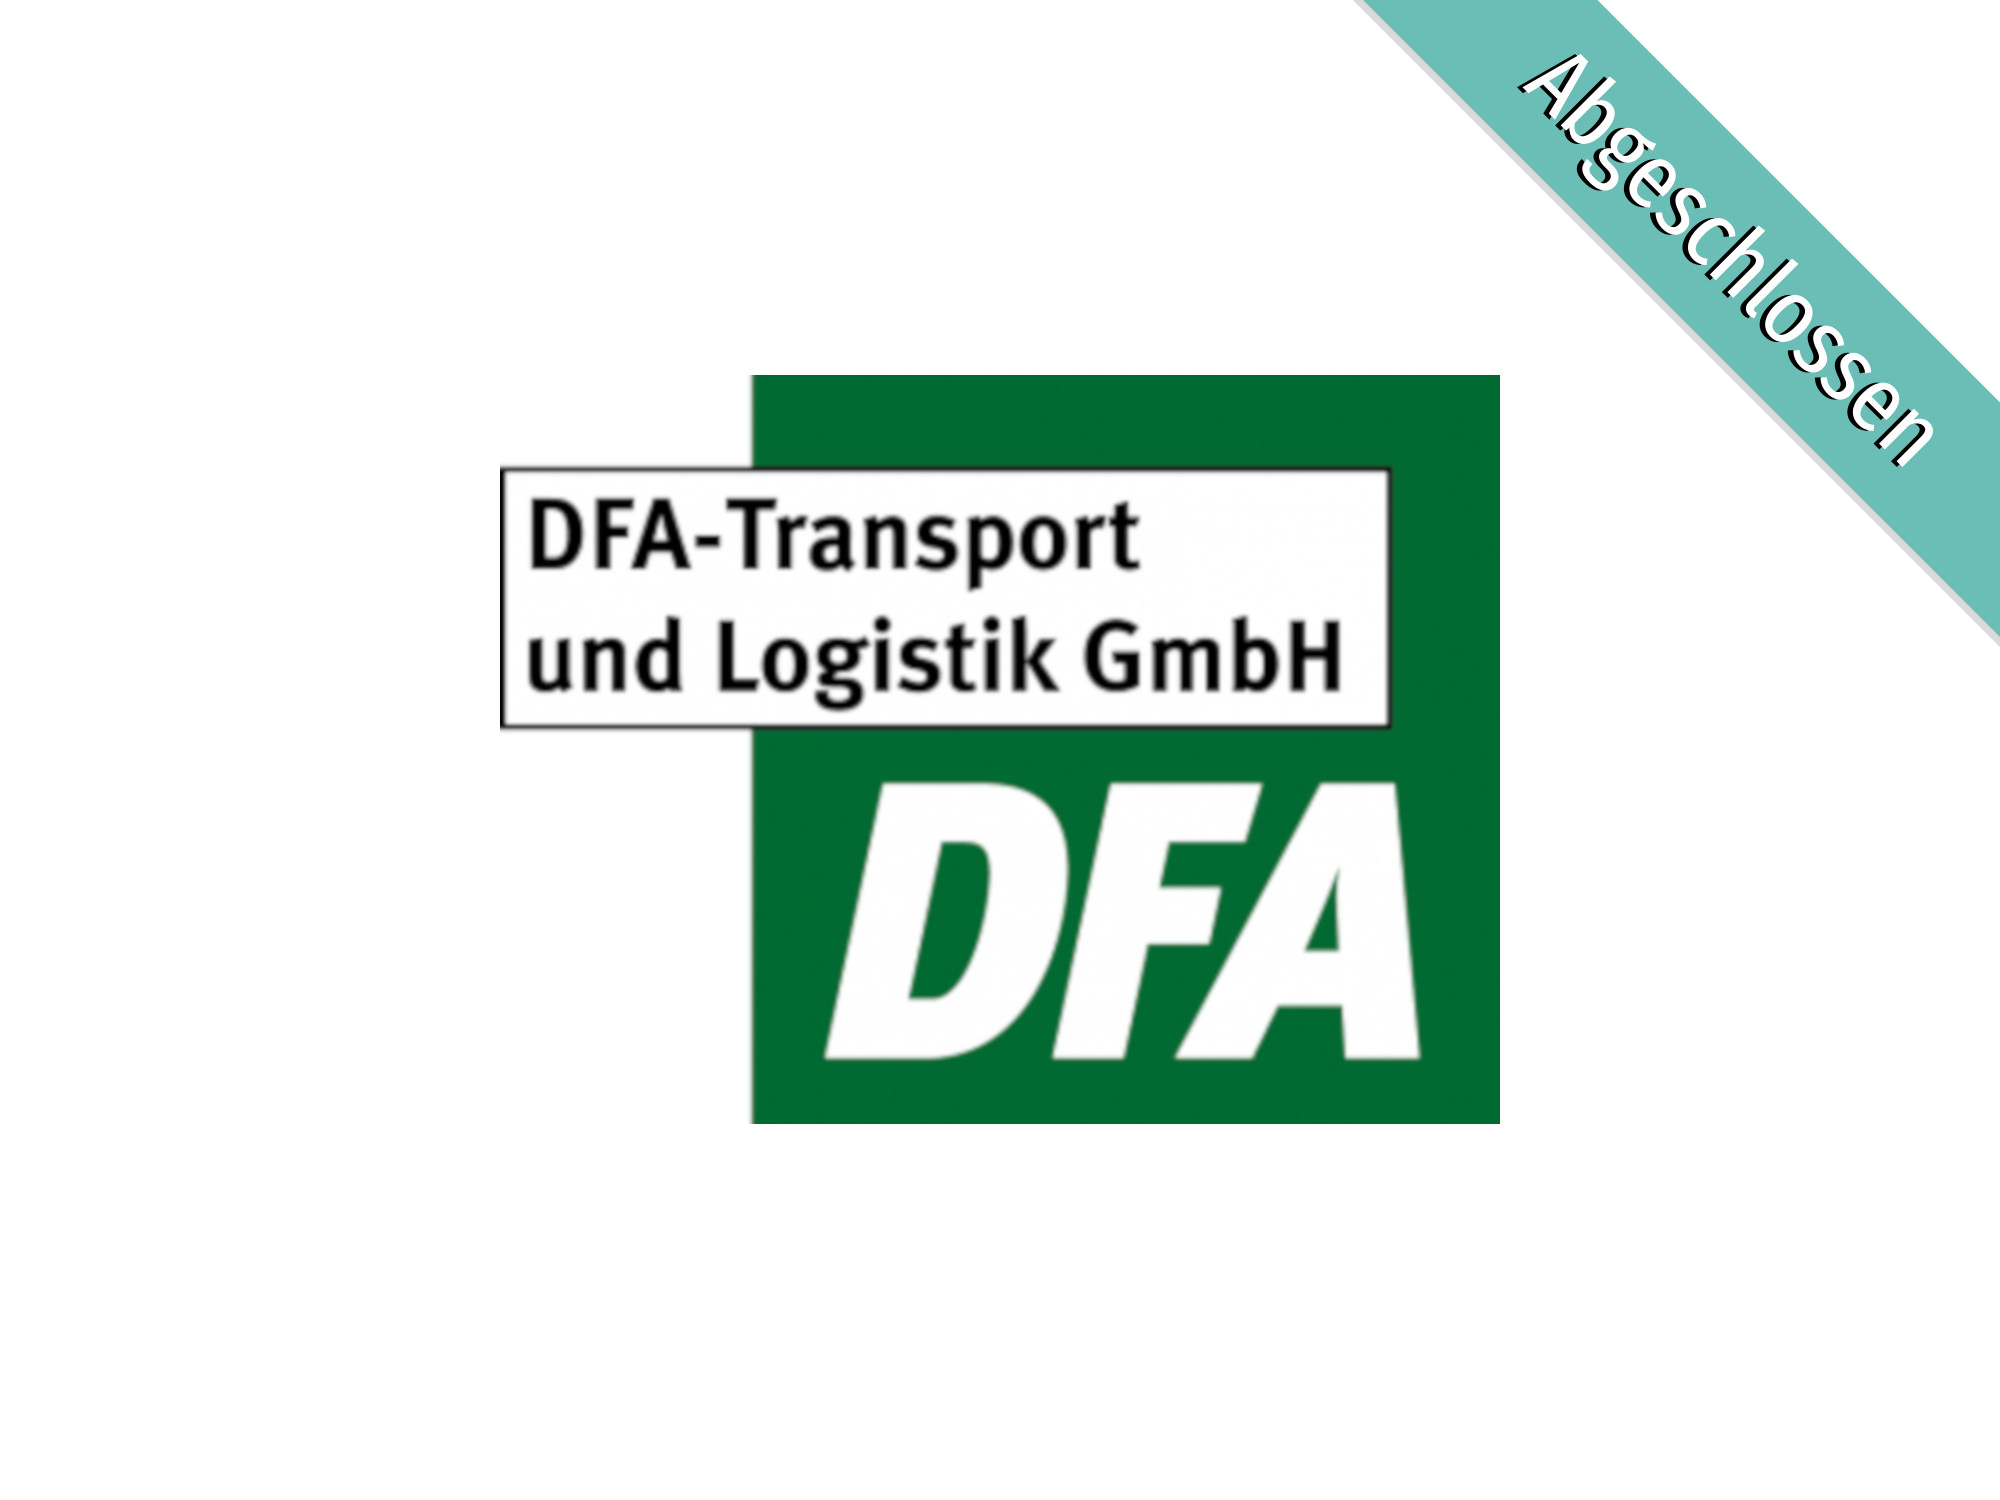 DFA-Transport und Logistik GmbH